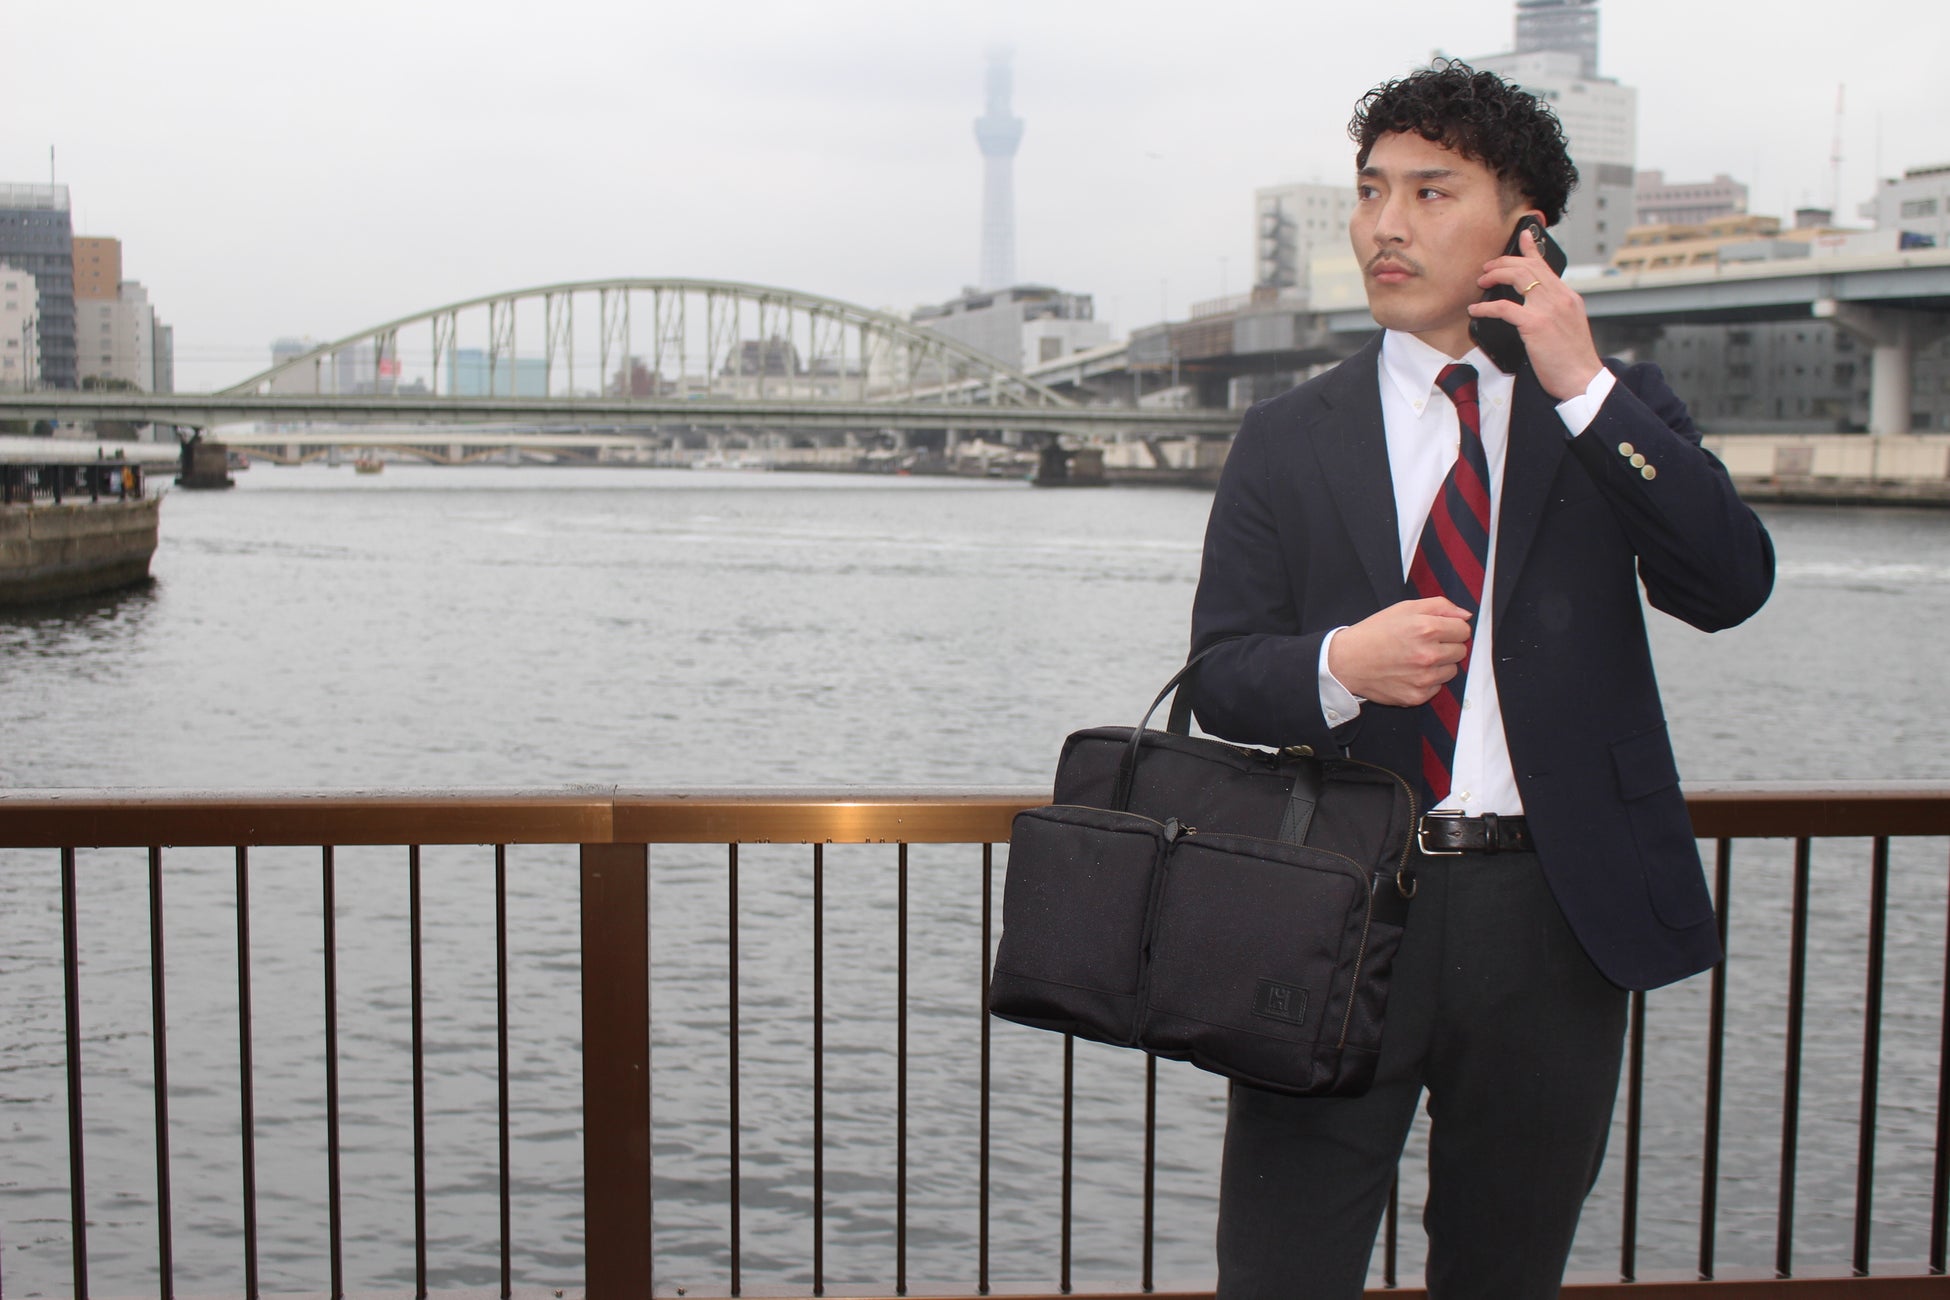 【新発売】創業107年の老舗メーカーが手掛ける、Hakutaiから「ミリタリーテイストをベースにした永く使える鞄...